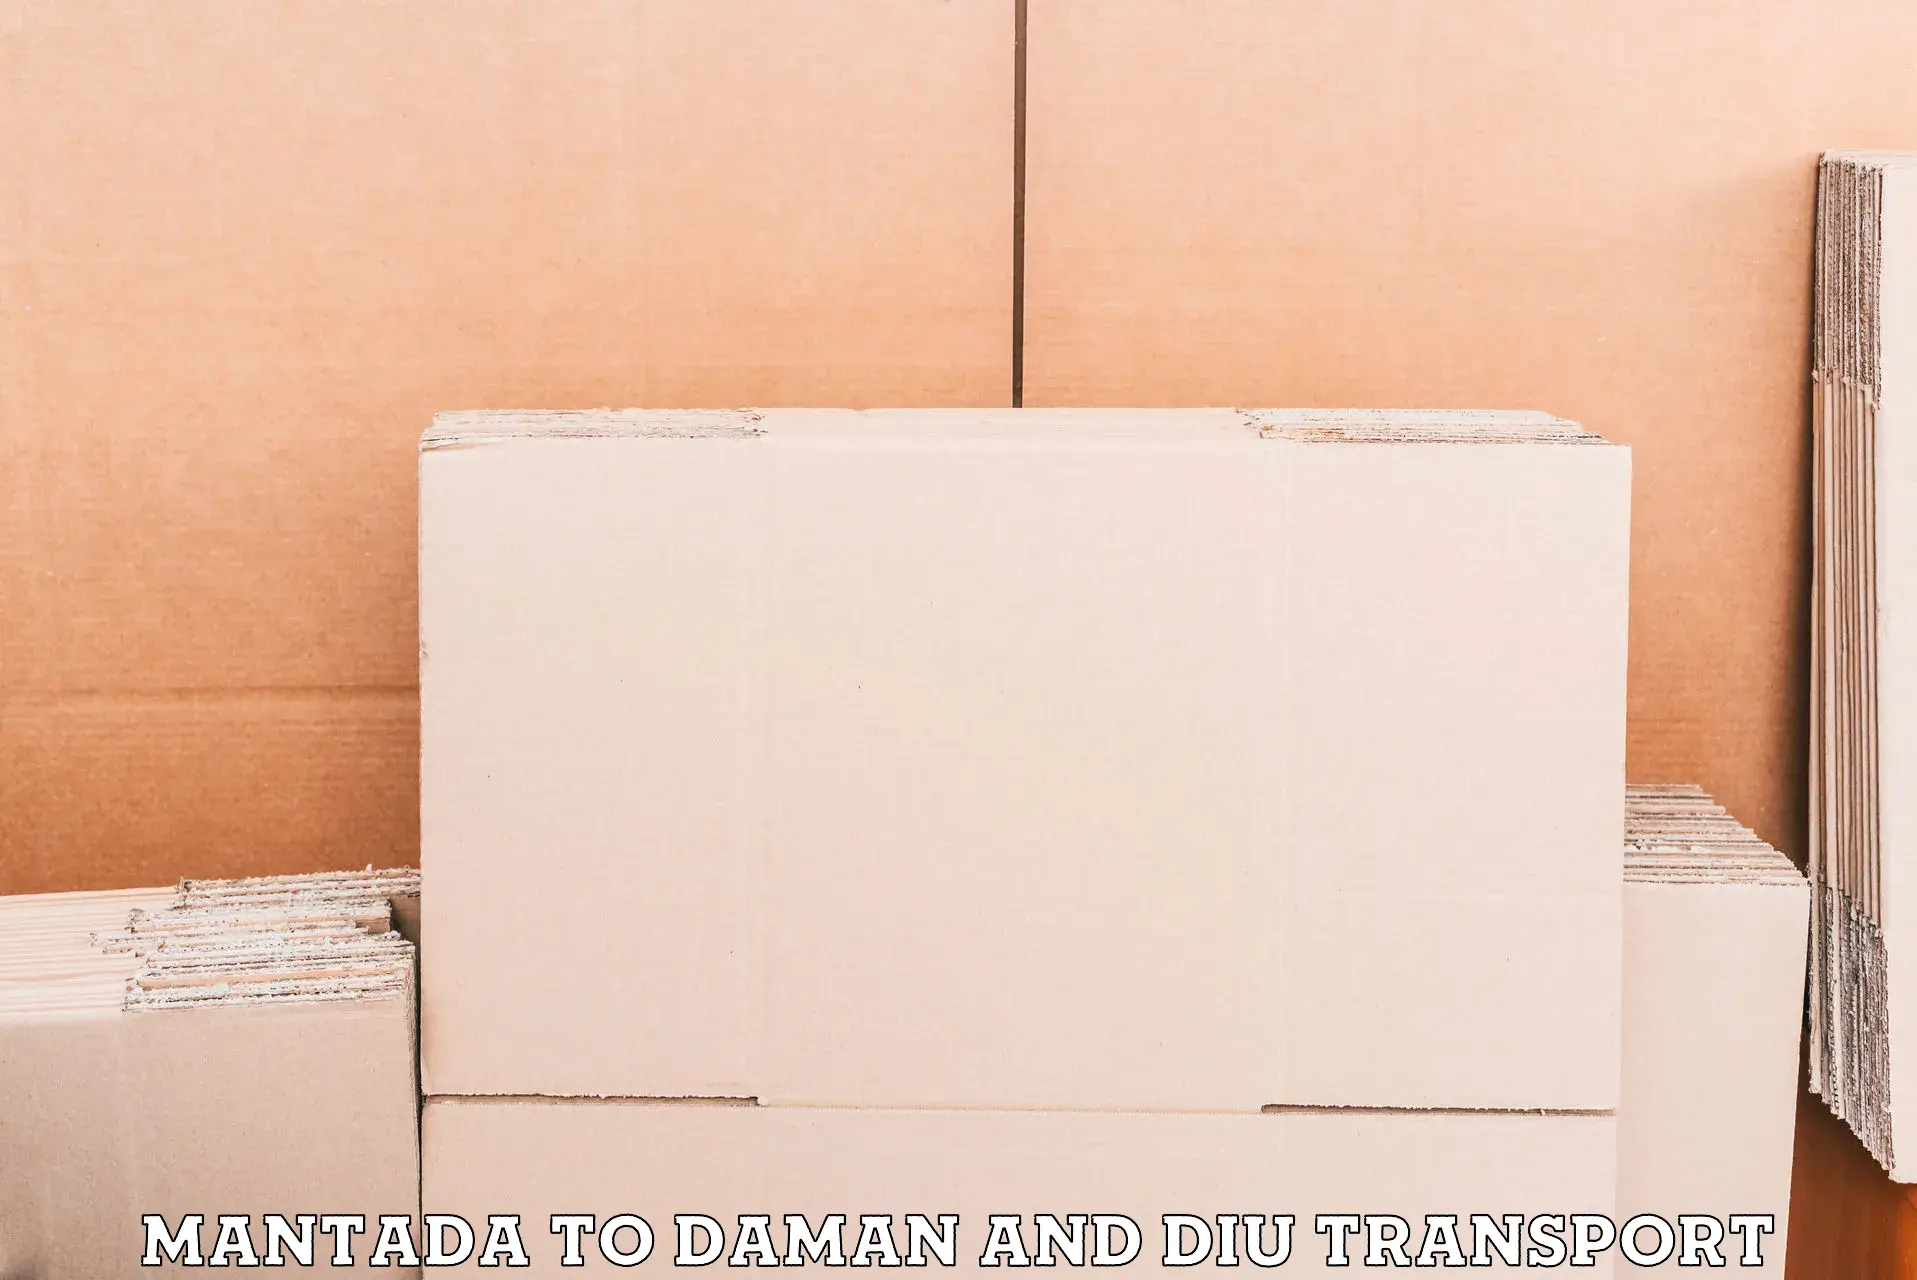 Furniture transport service Mantada to Daman and Diu